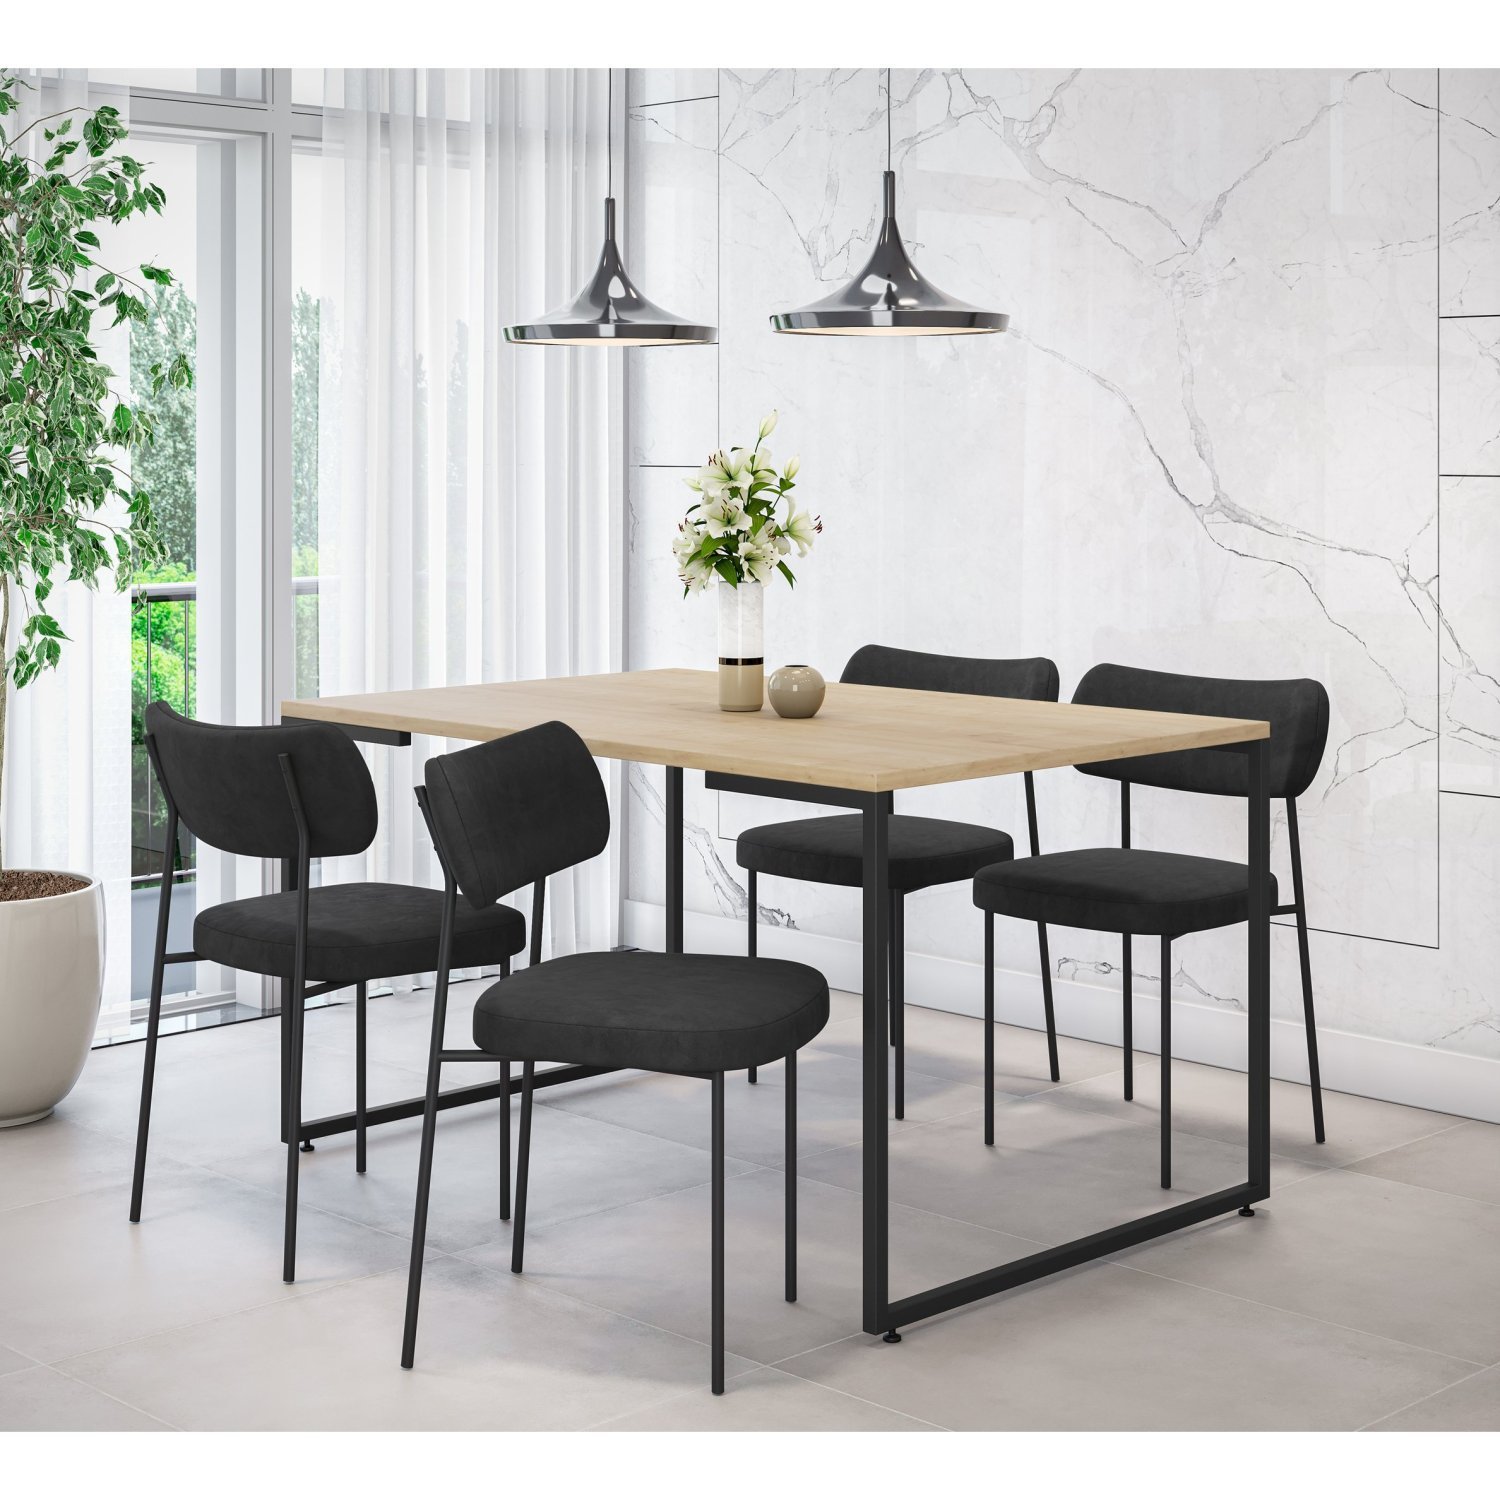 Conjunto Sala de Jantar Mesa 135x90cm Porto Estilo Industrial com 4 Cadeiras Mona Espresso Móveis - 1